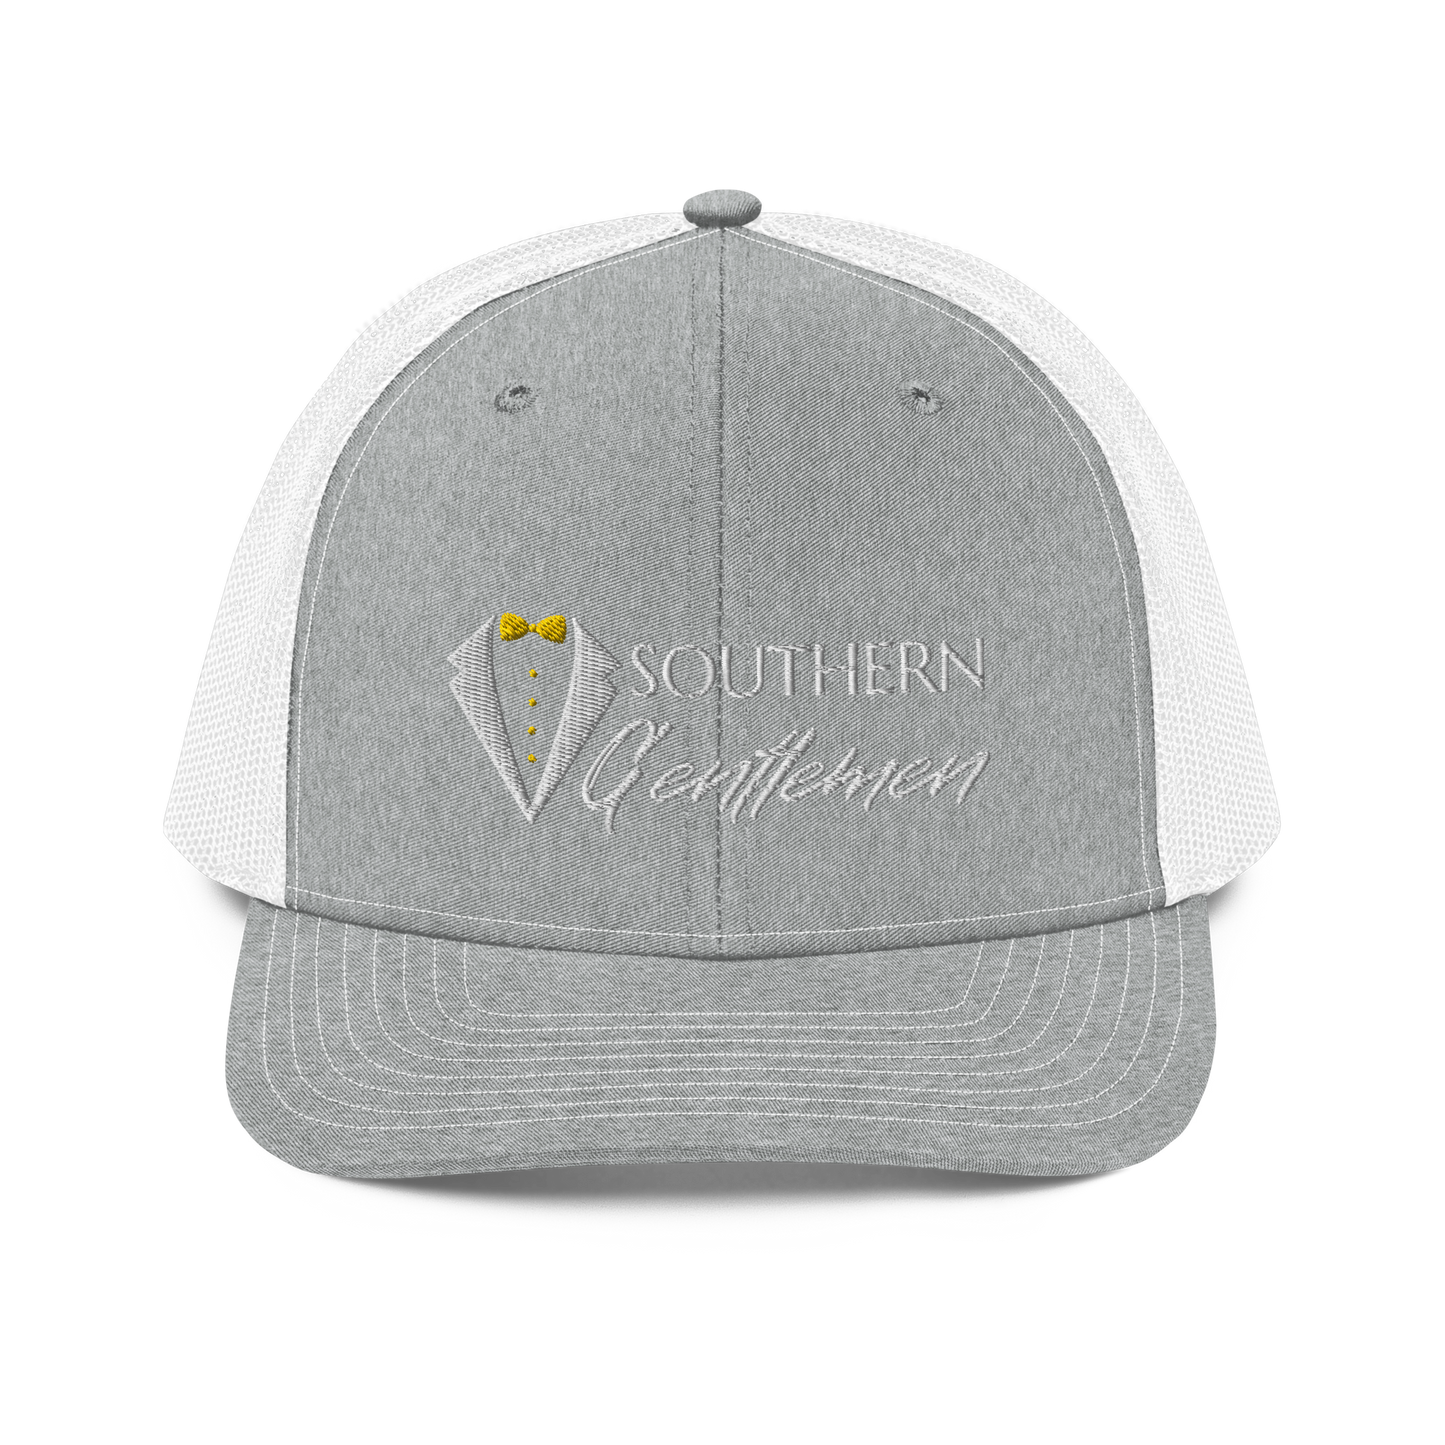 Southern Gentlemen Trucker Cap